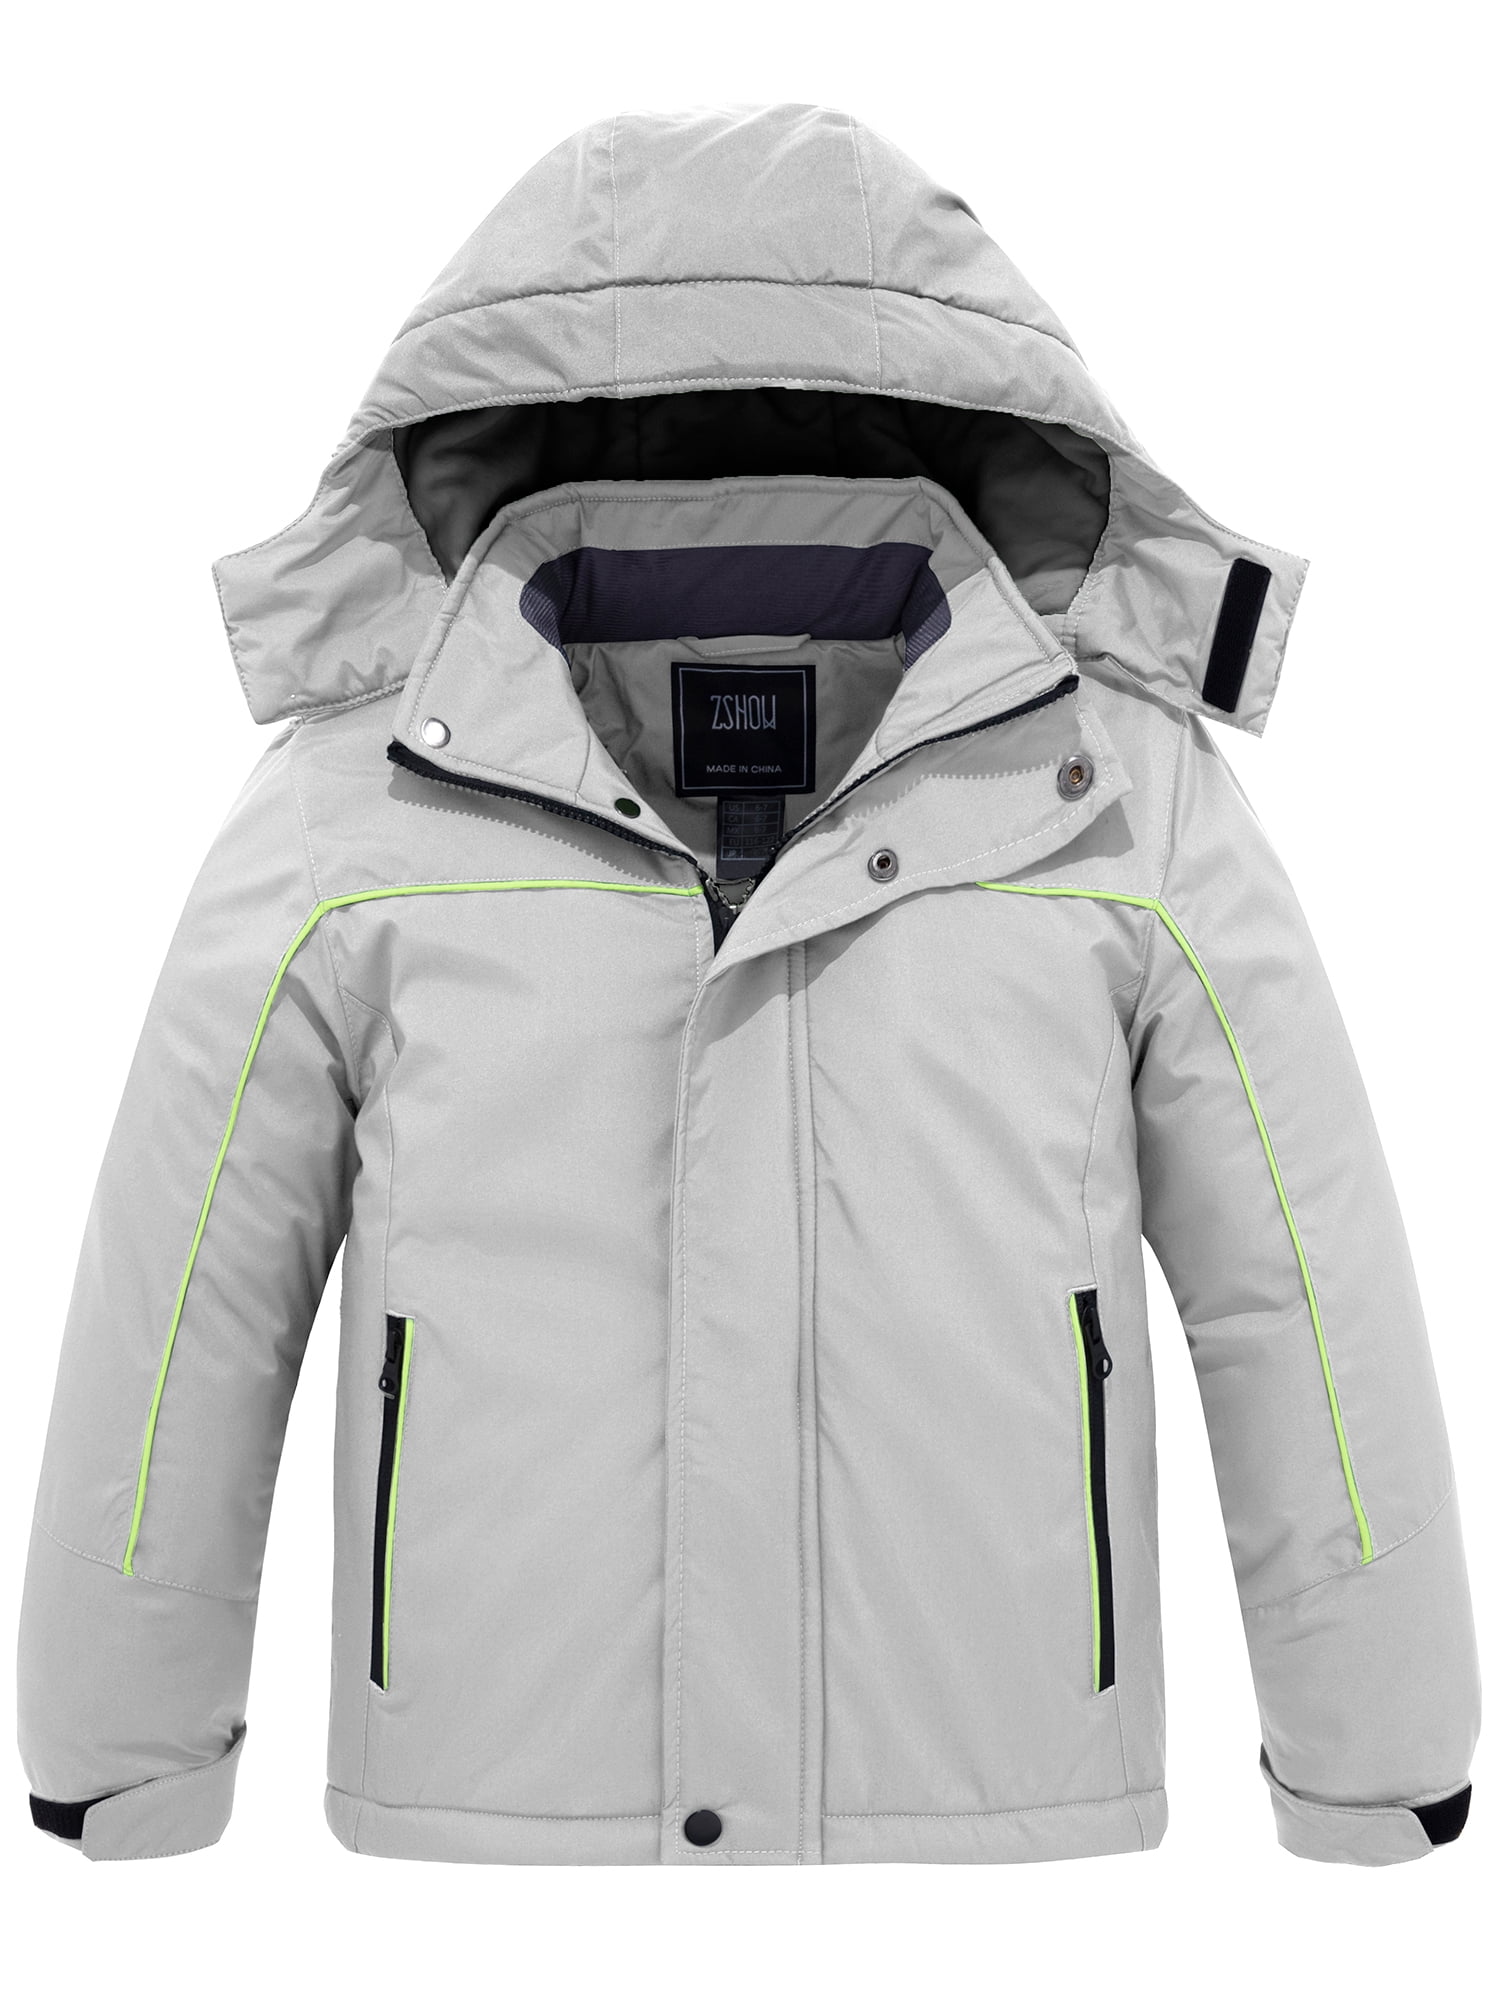 LNDR Solid Gray White Light Grey Velocity Ski Jacket Size XS - 81% off